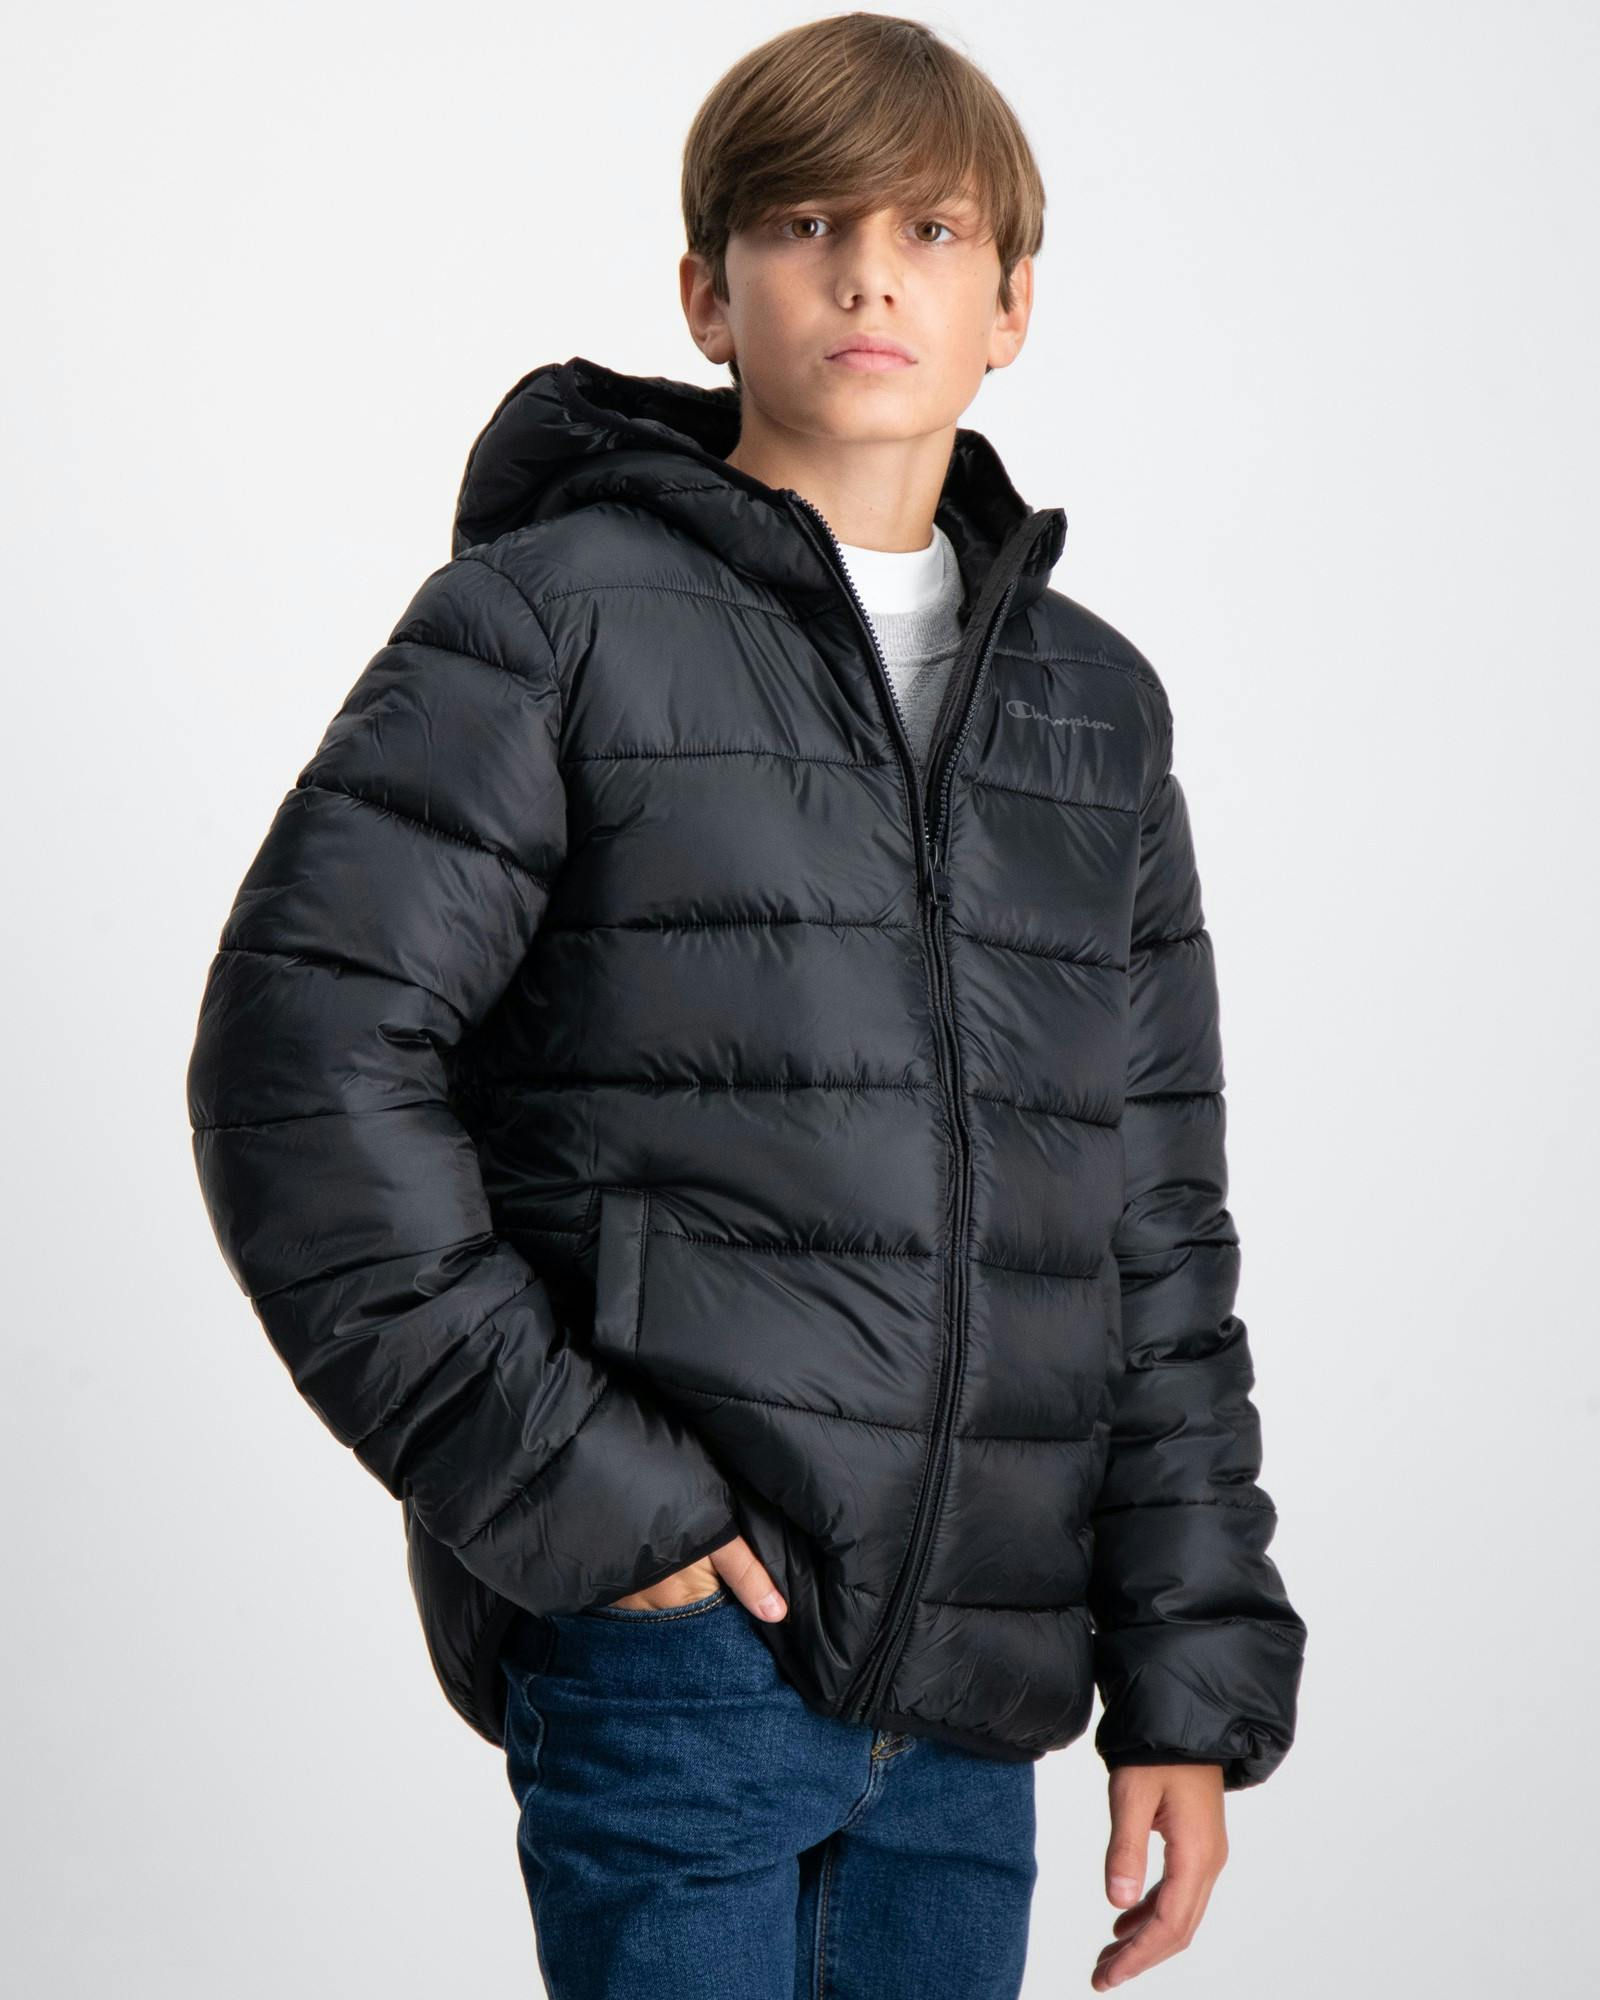 Schwarz Hooded Jacket für Jungen | Kids Brand Store